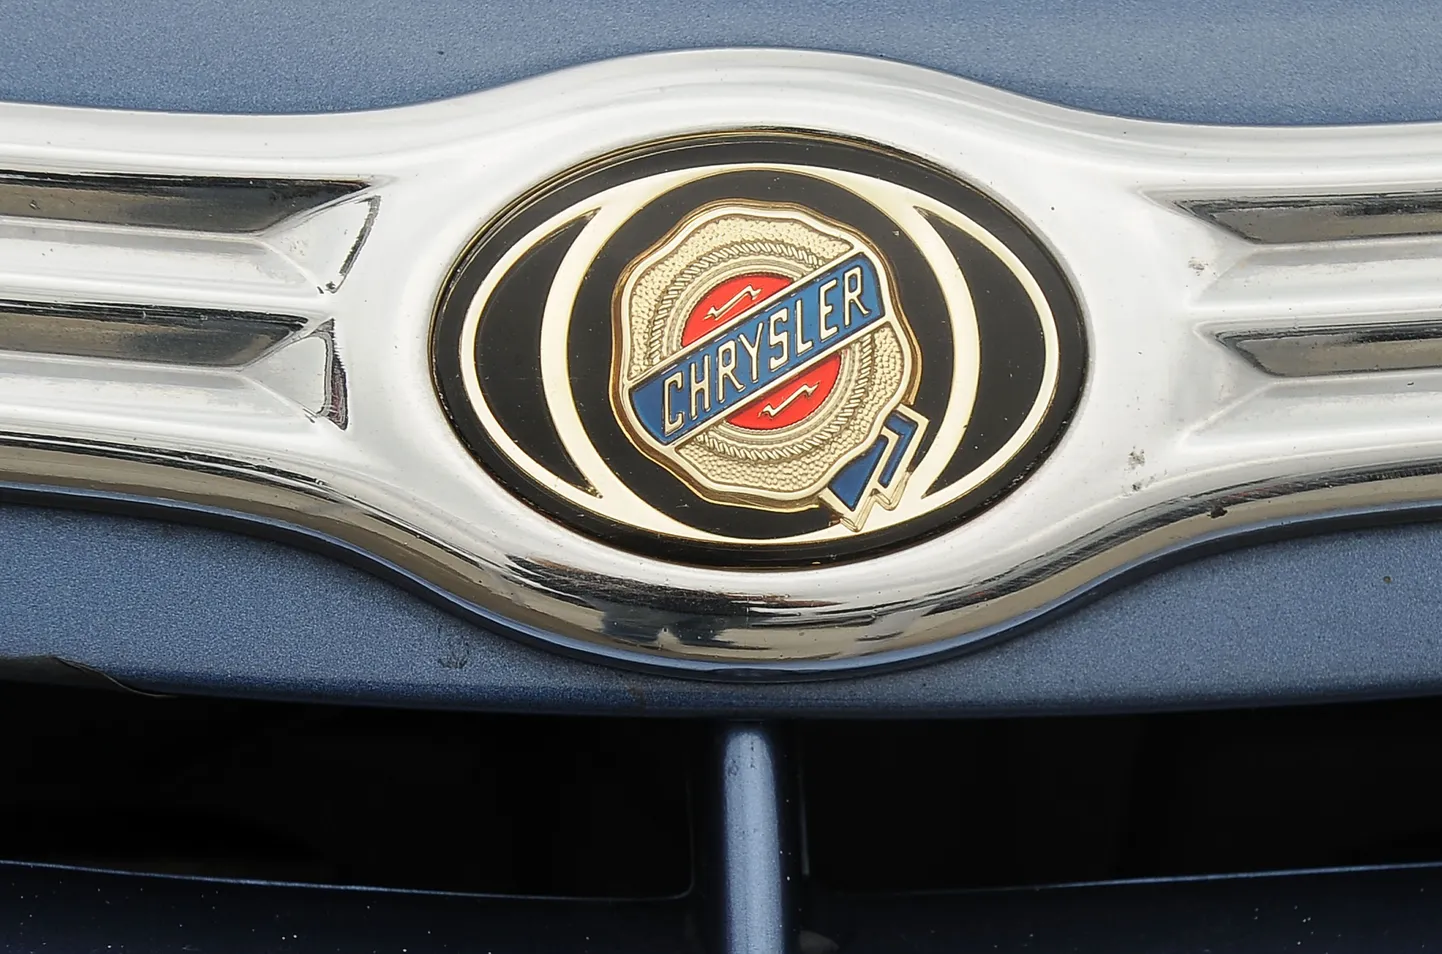 Chrysleri logo